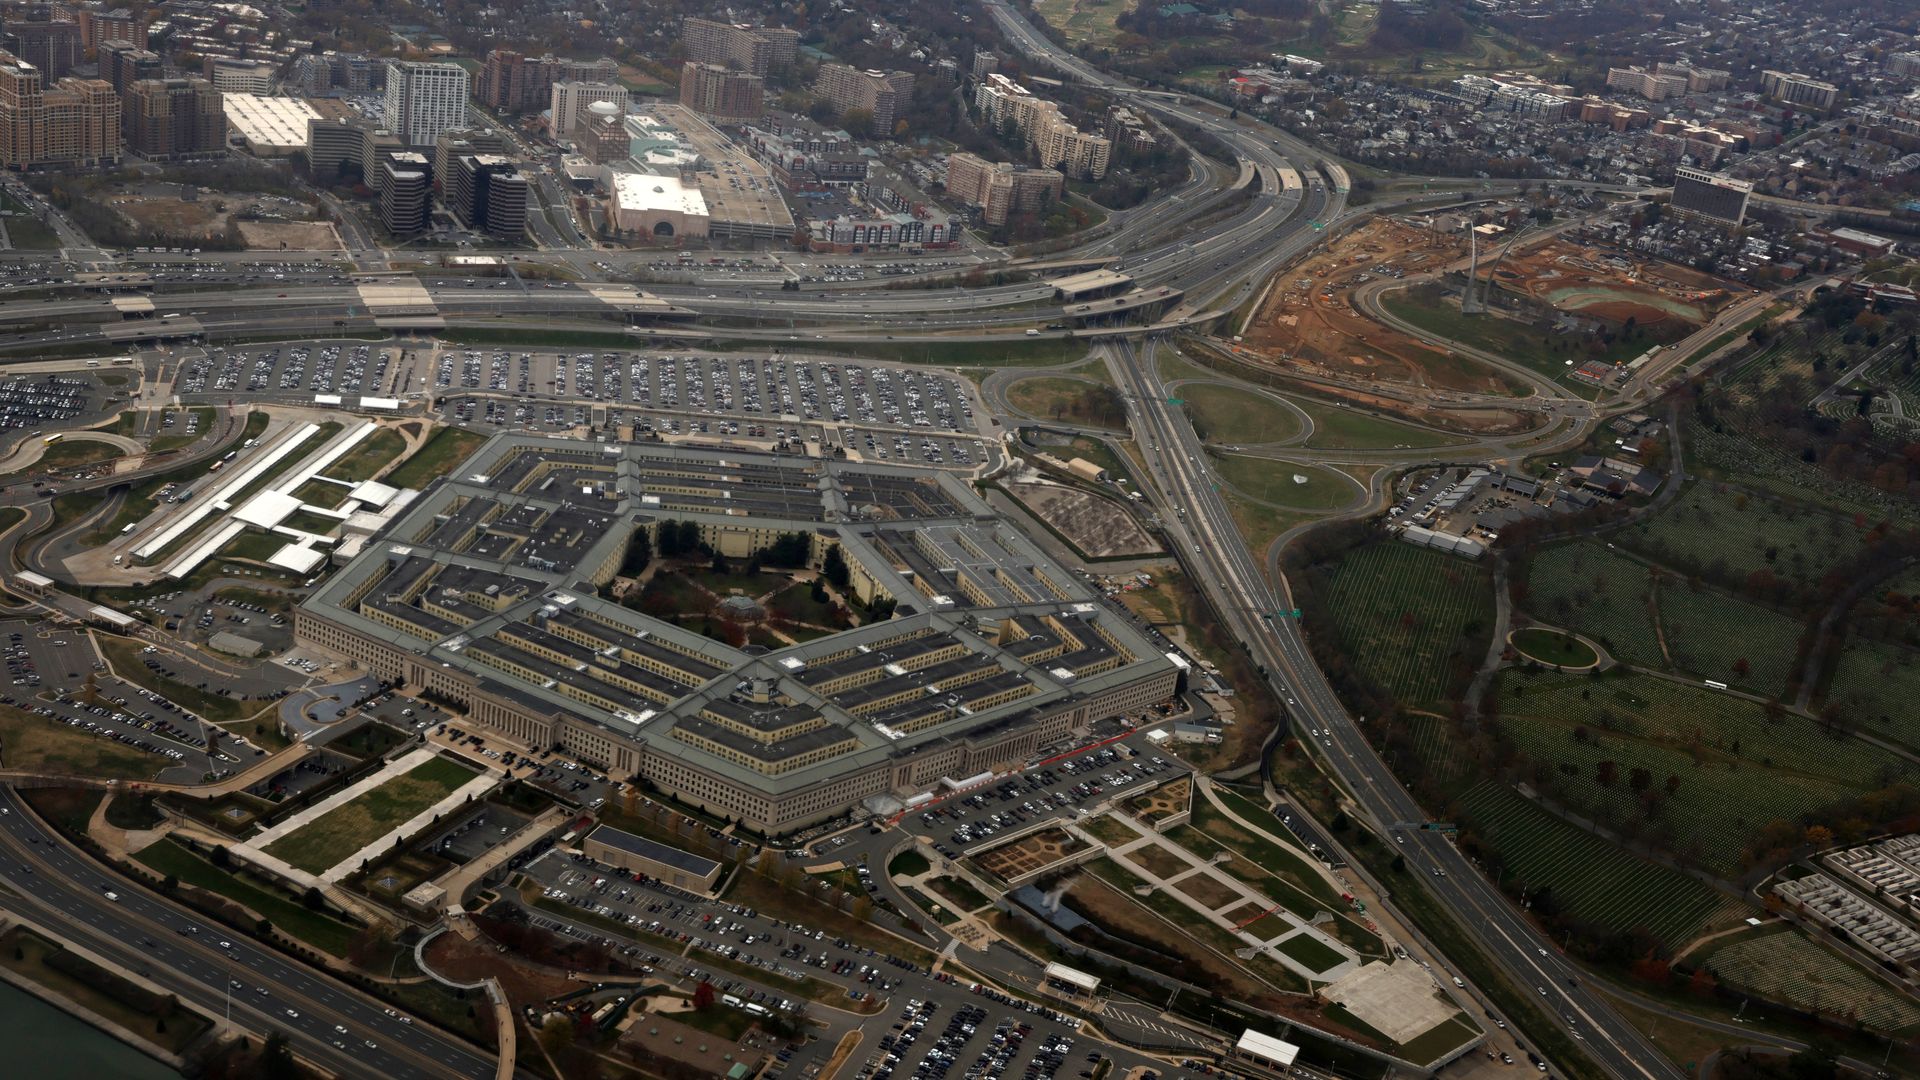 The U.S. Pentagon.